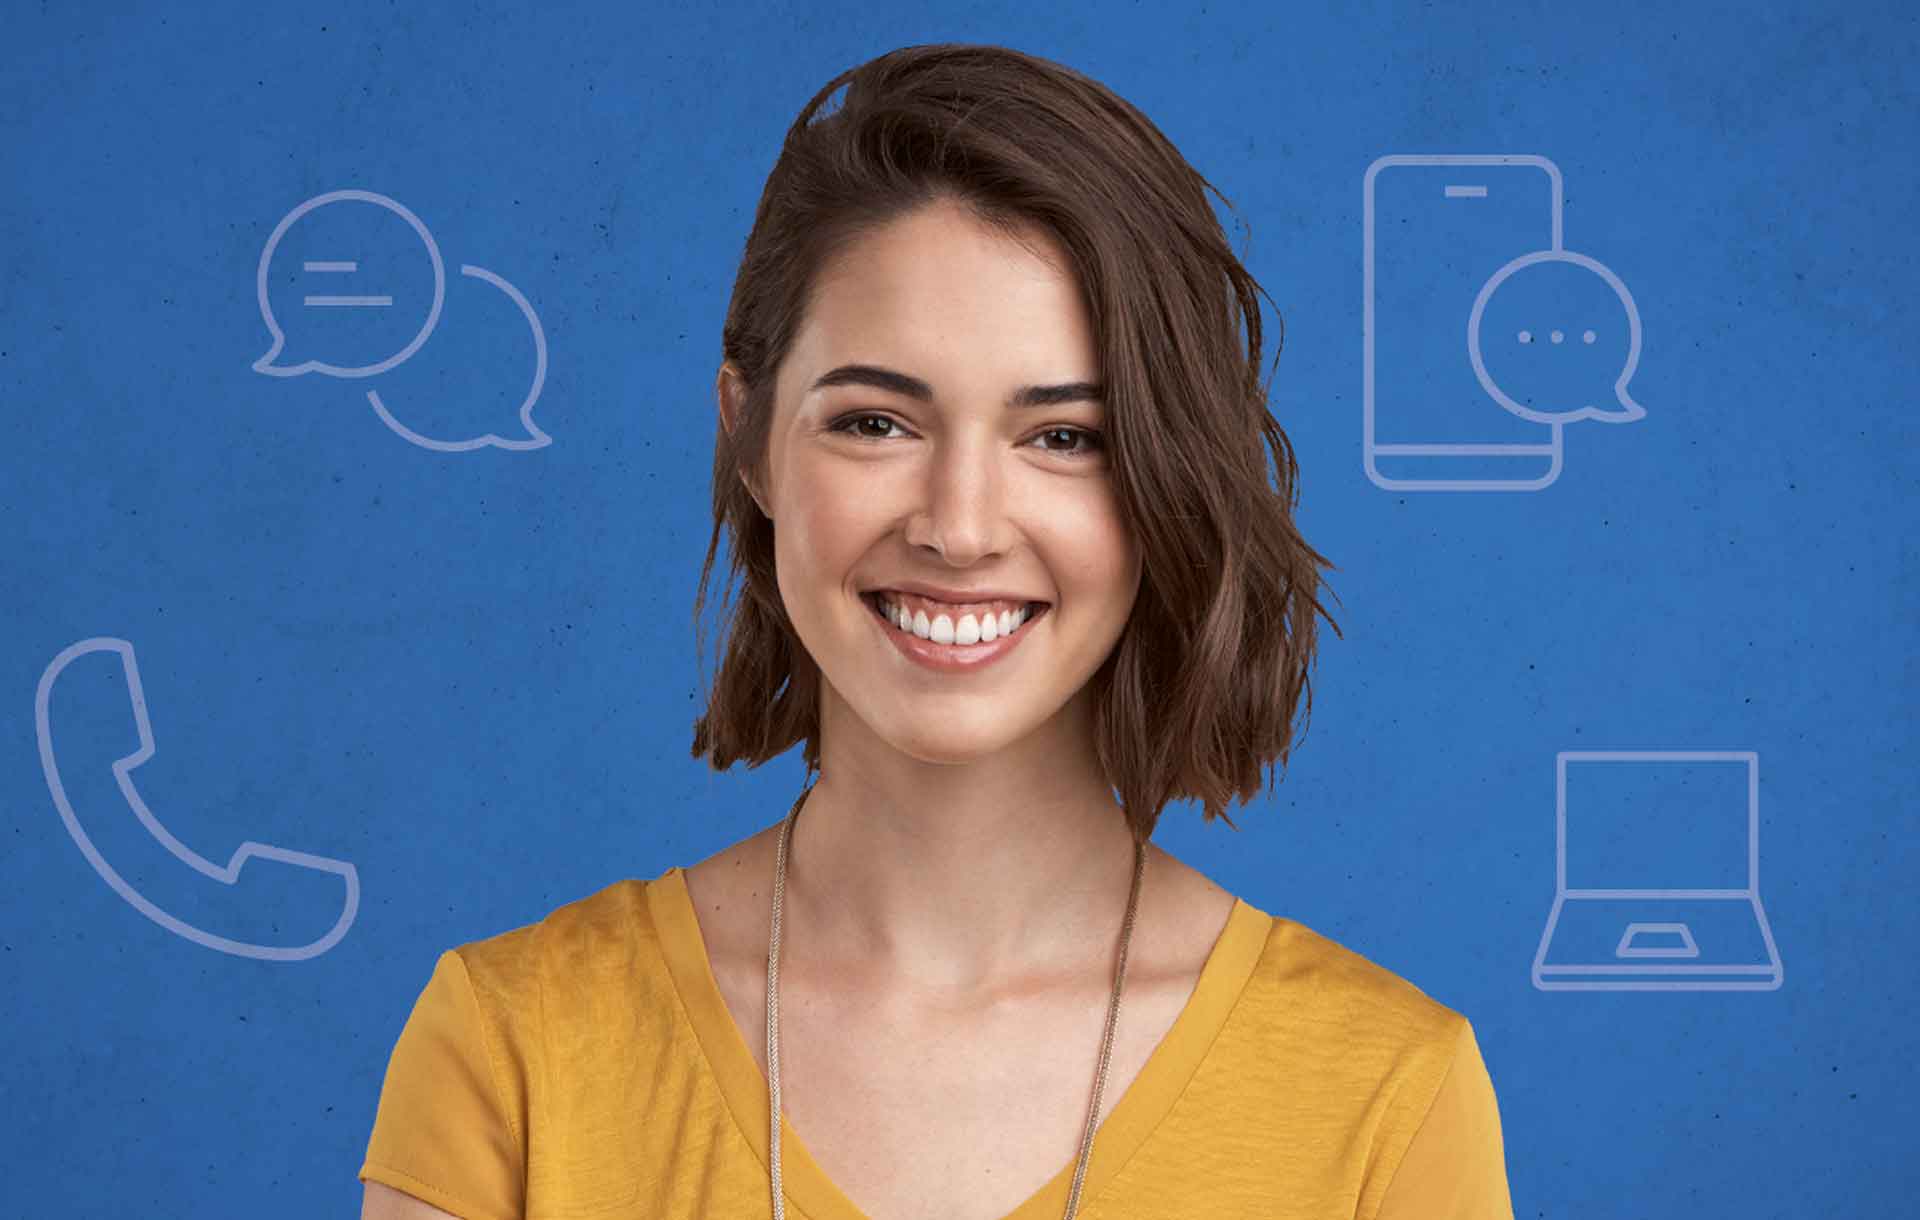 Bild zur digitalen Beratung zeigt eine Person mit Kommunikationsmedien als Icons im Hintergrund